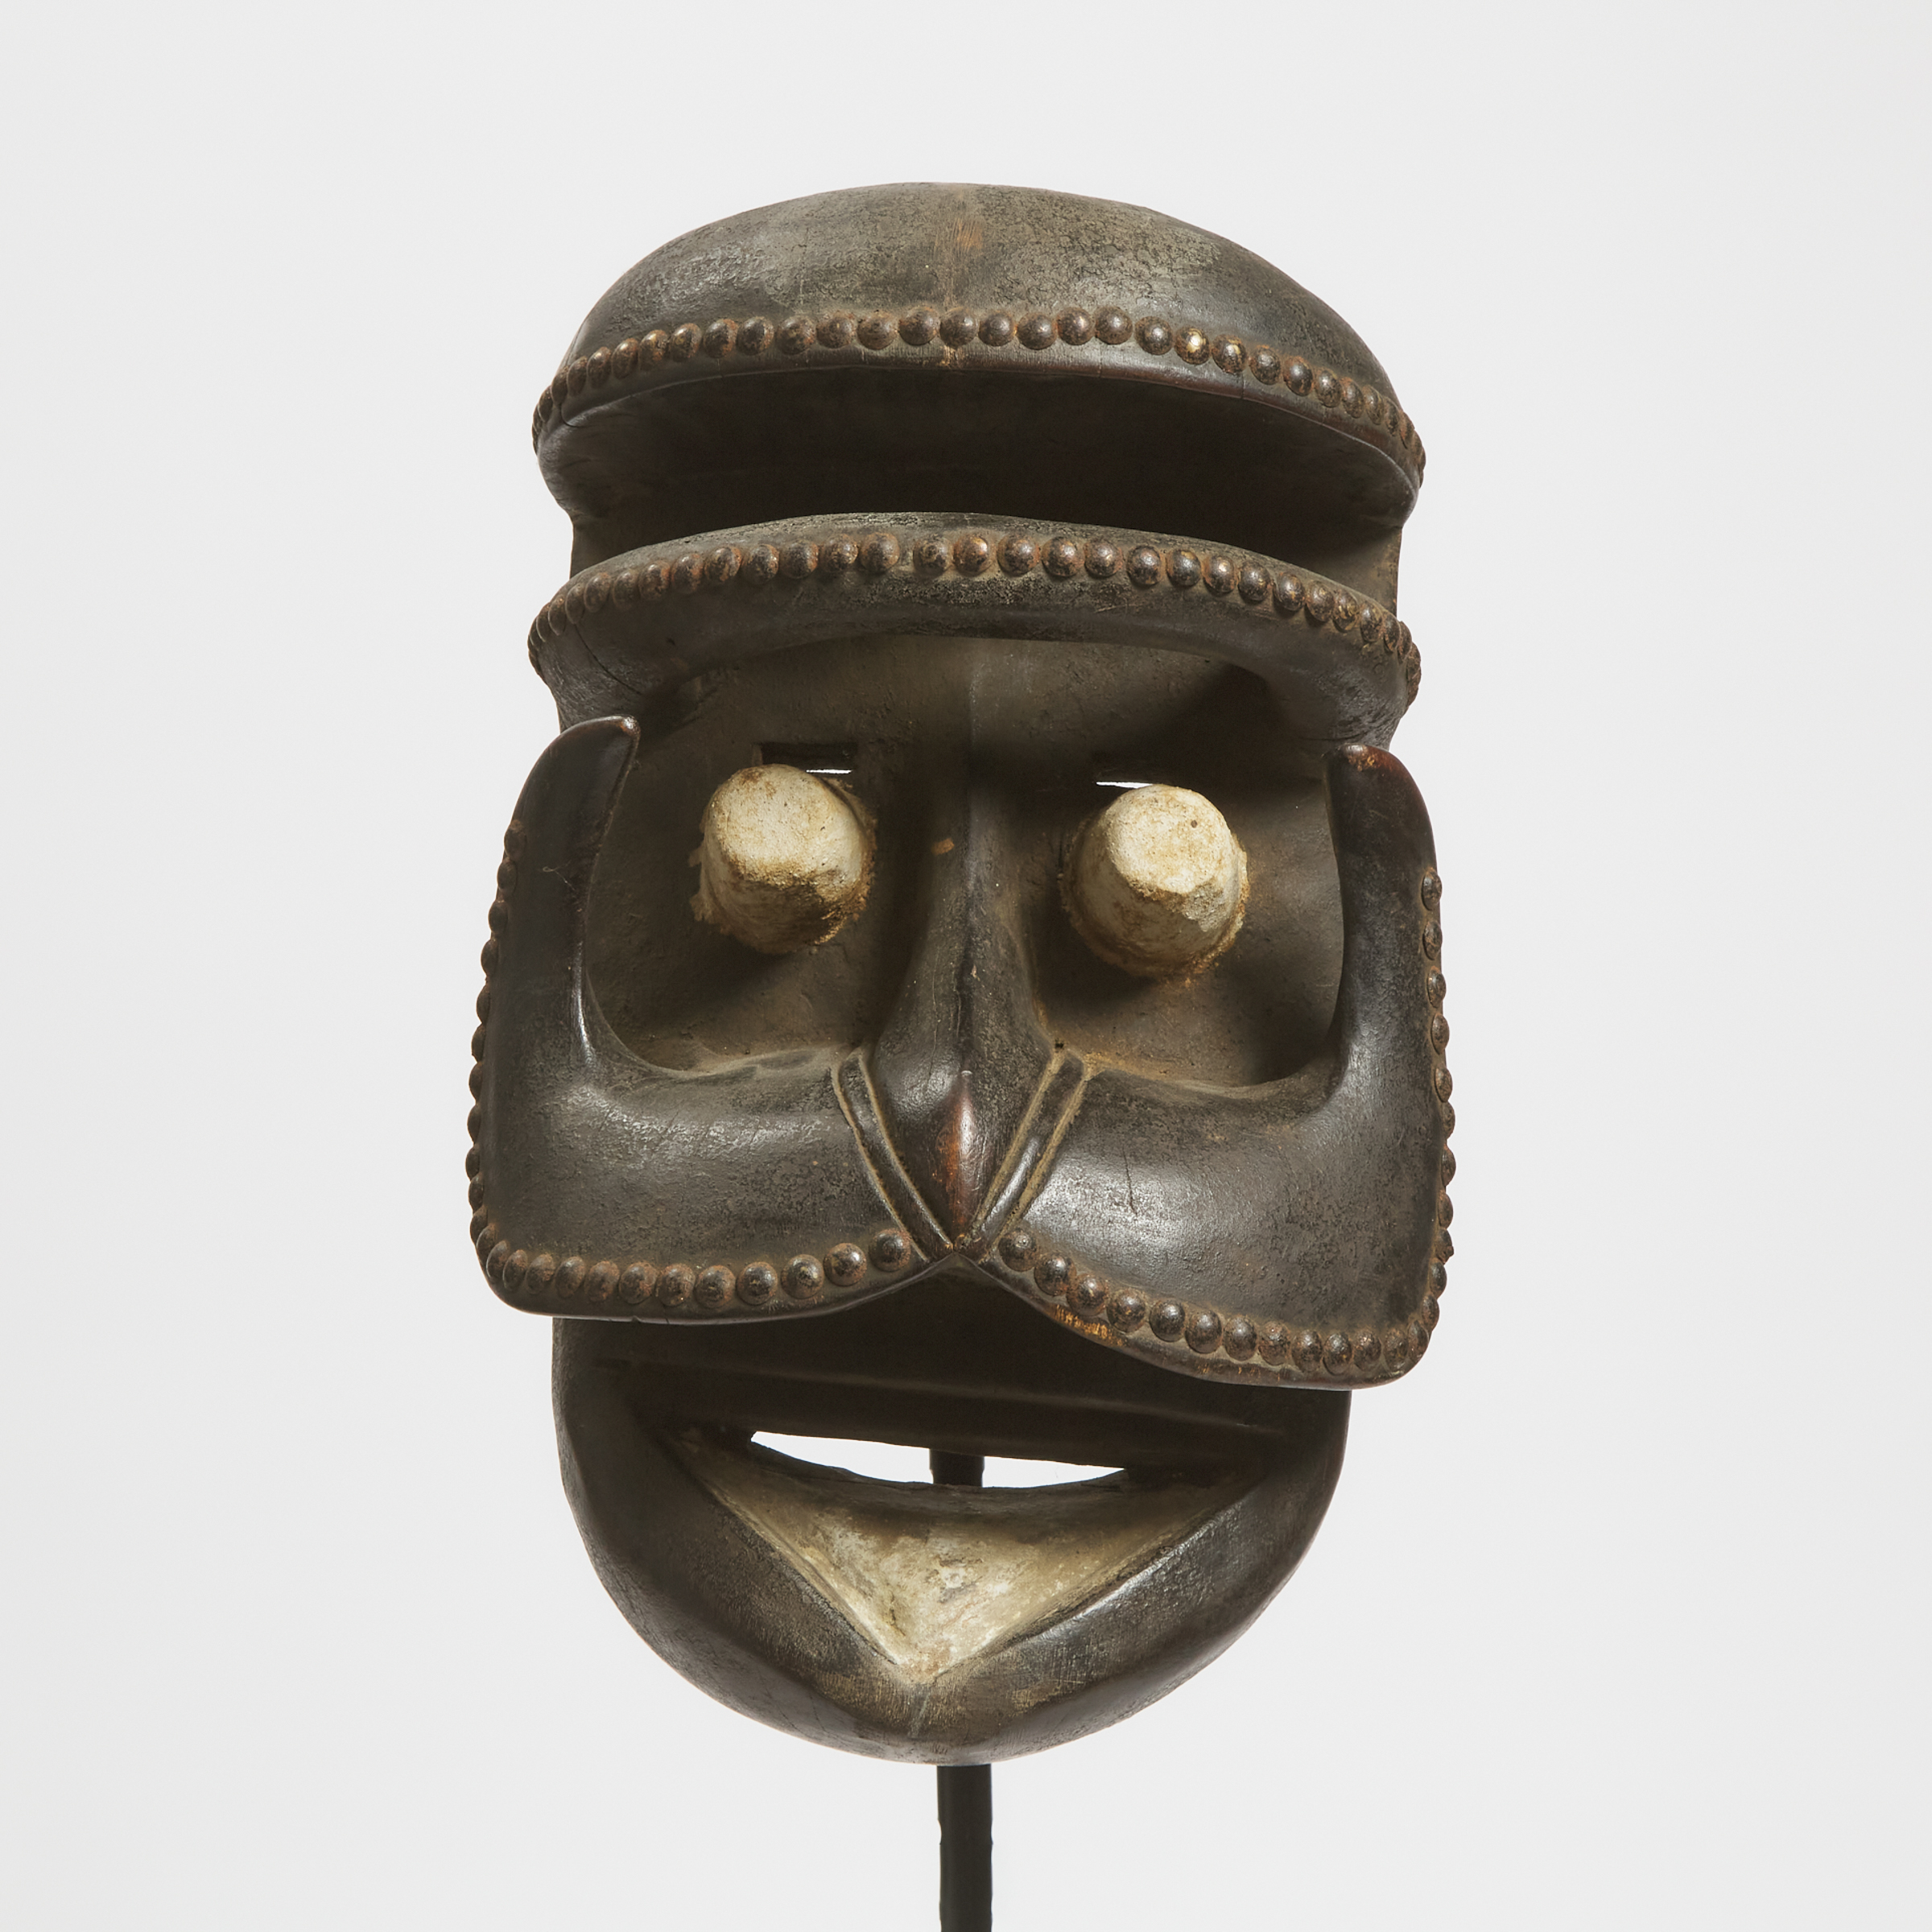 Bete Mask, Ivory Coast, West Africa, 20th century